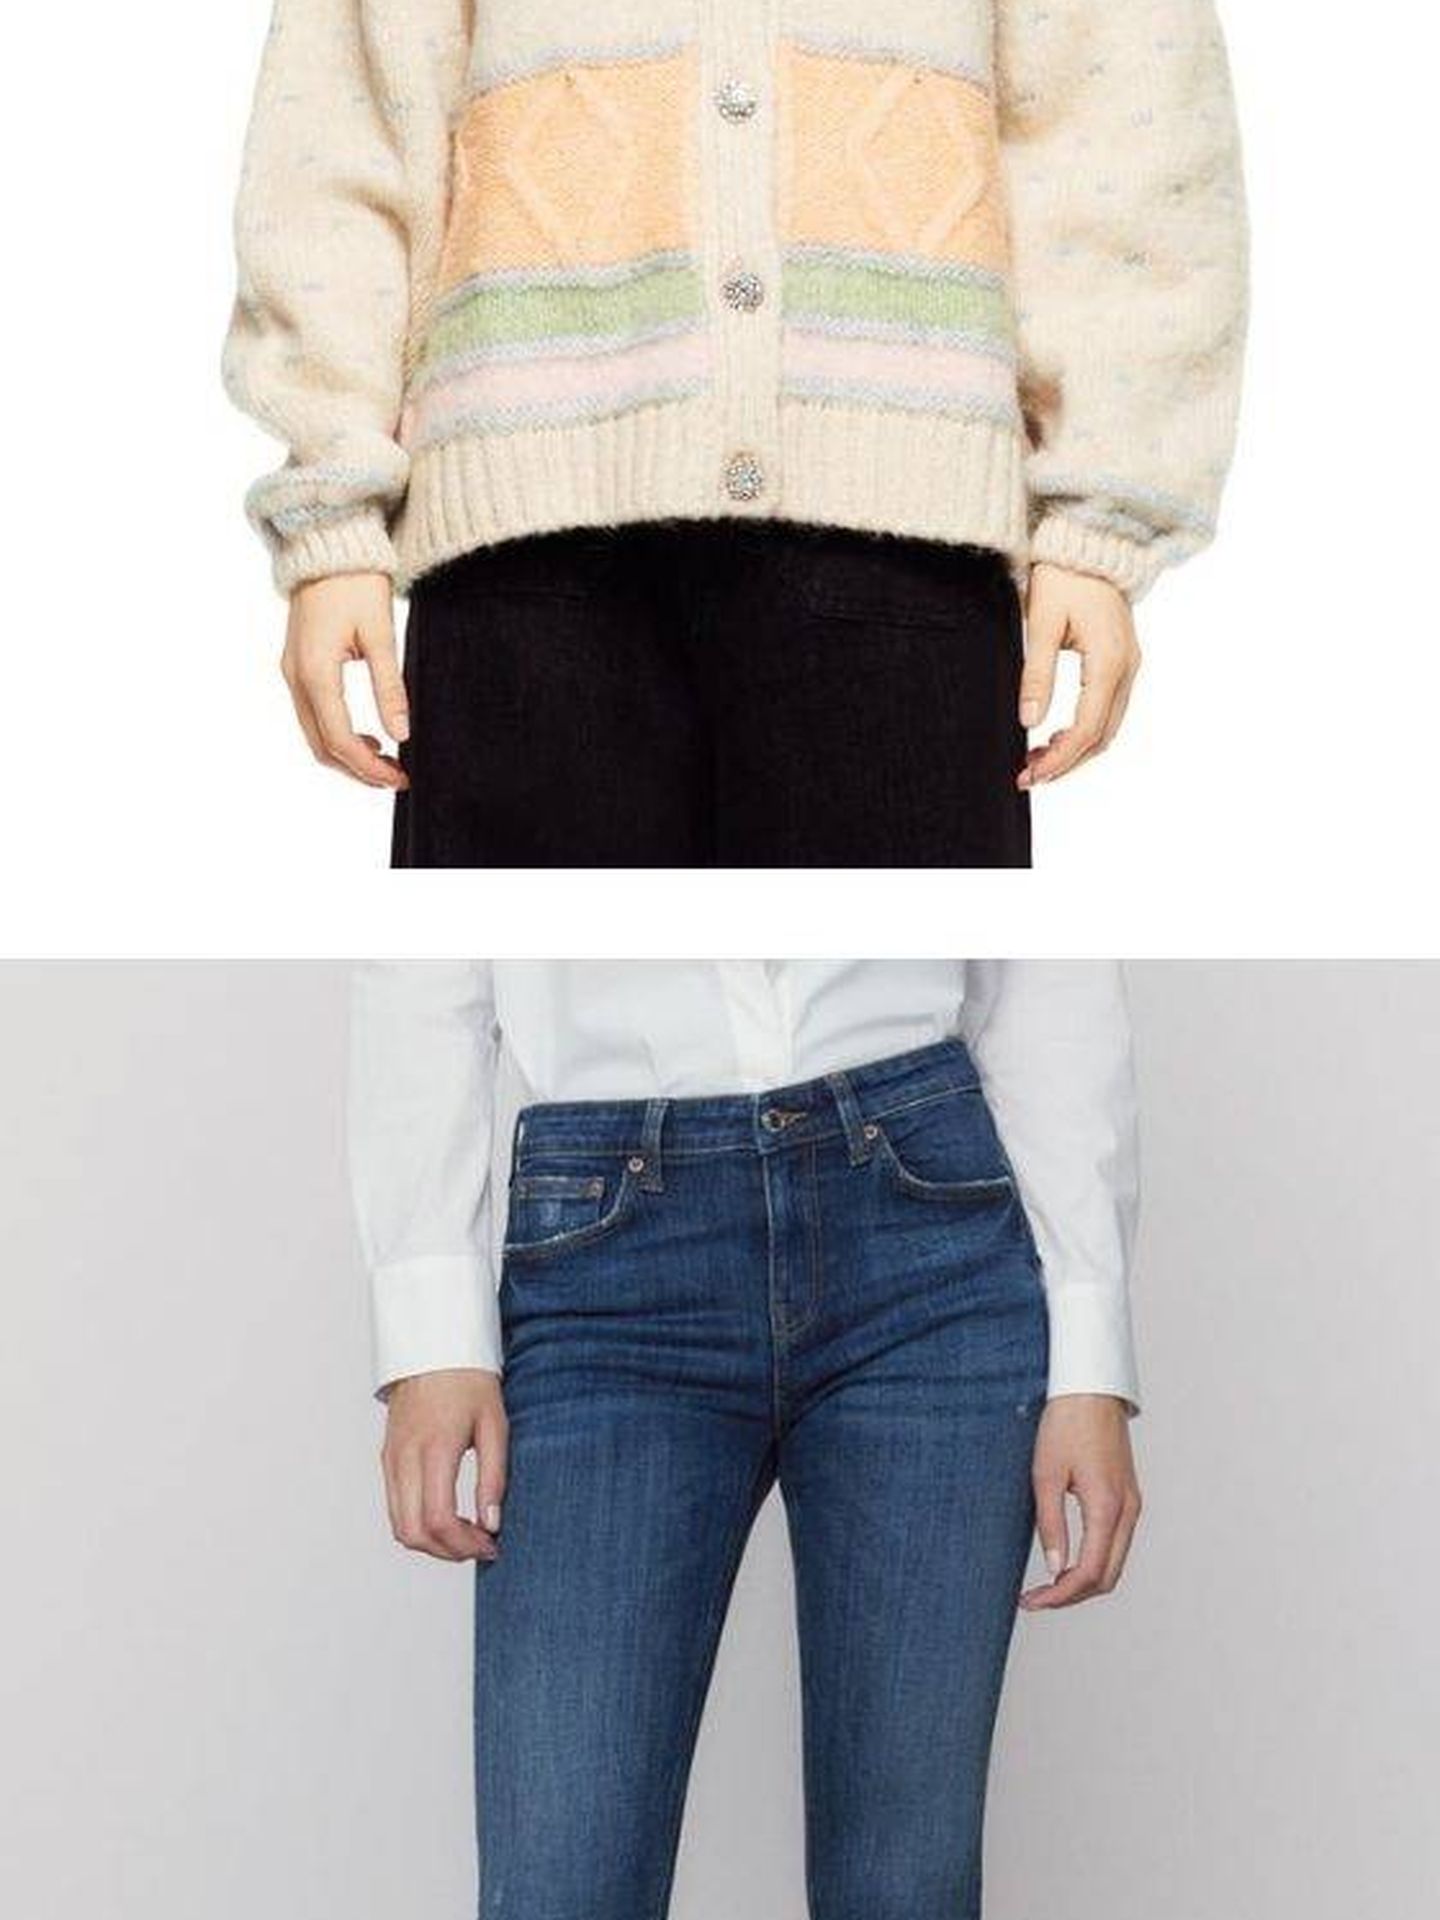 Vaqueros y chaqueta de Zara. (Instagram, @rocio0sorno)